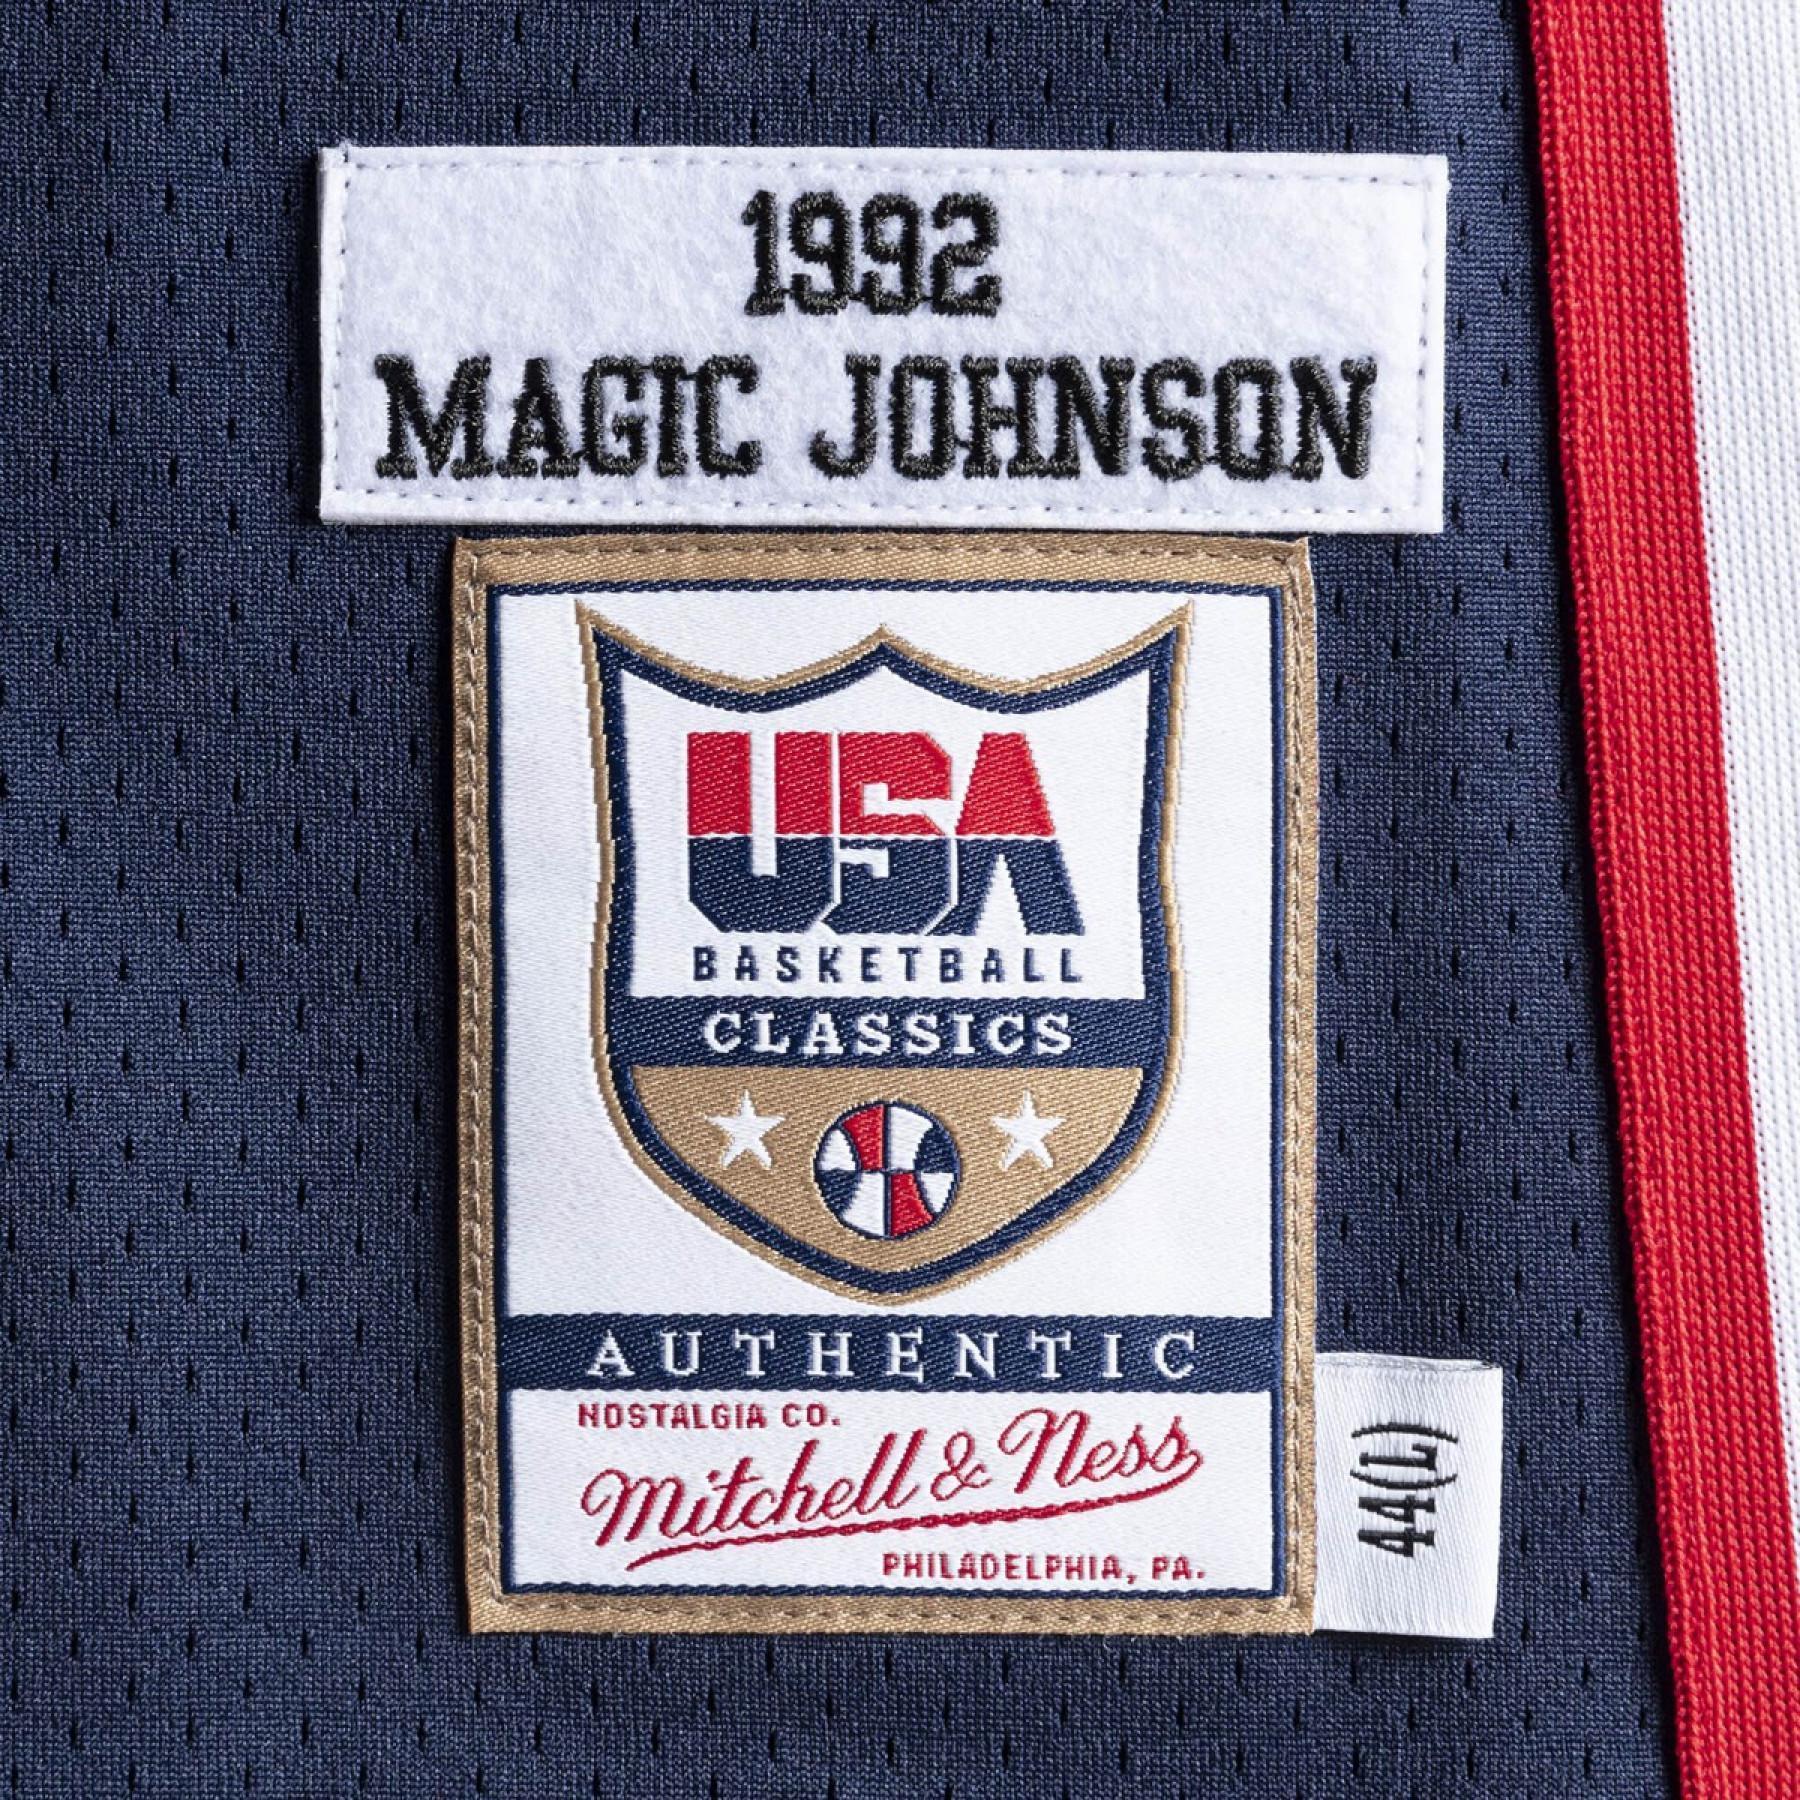 Autentyczna koszulka drużyny USA nba Magic Johnson